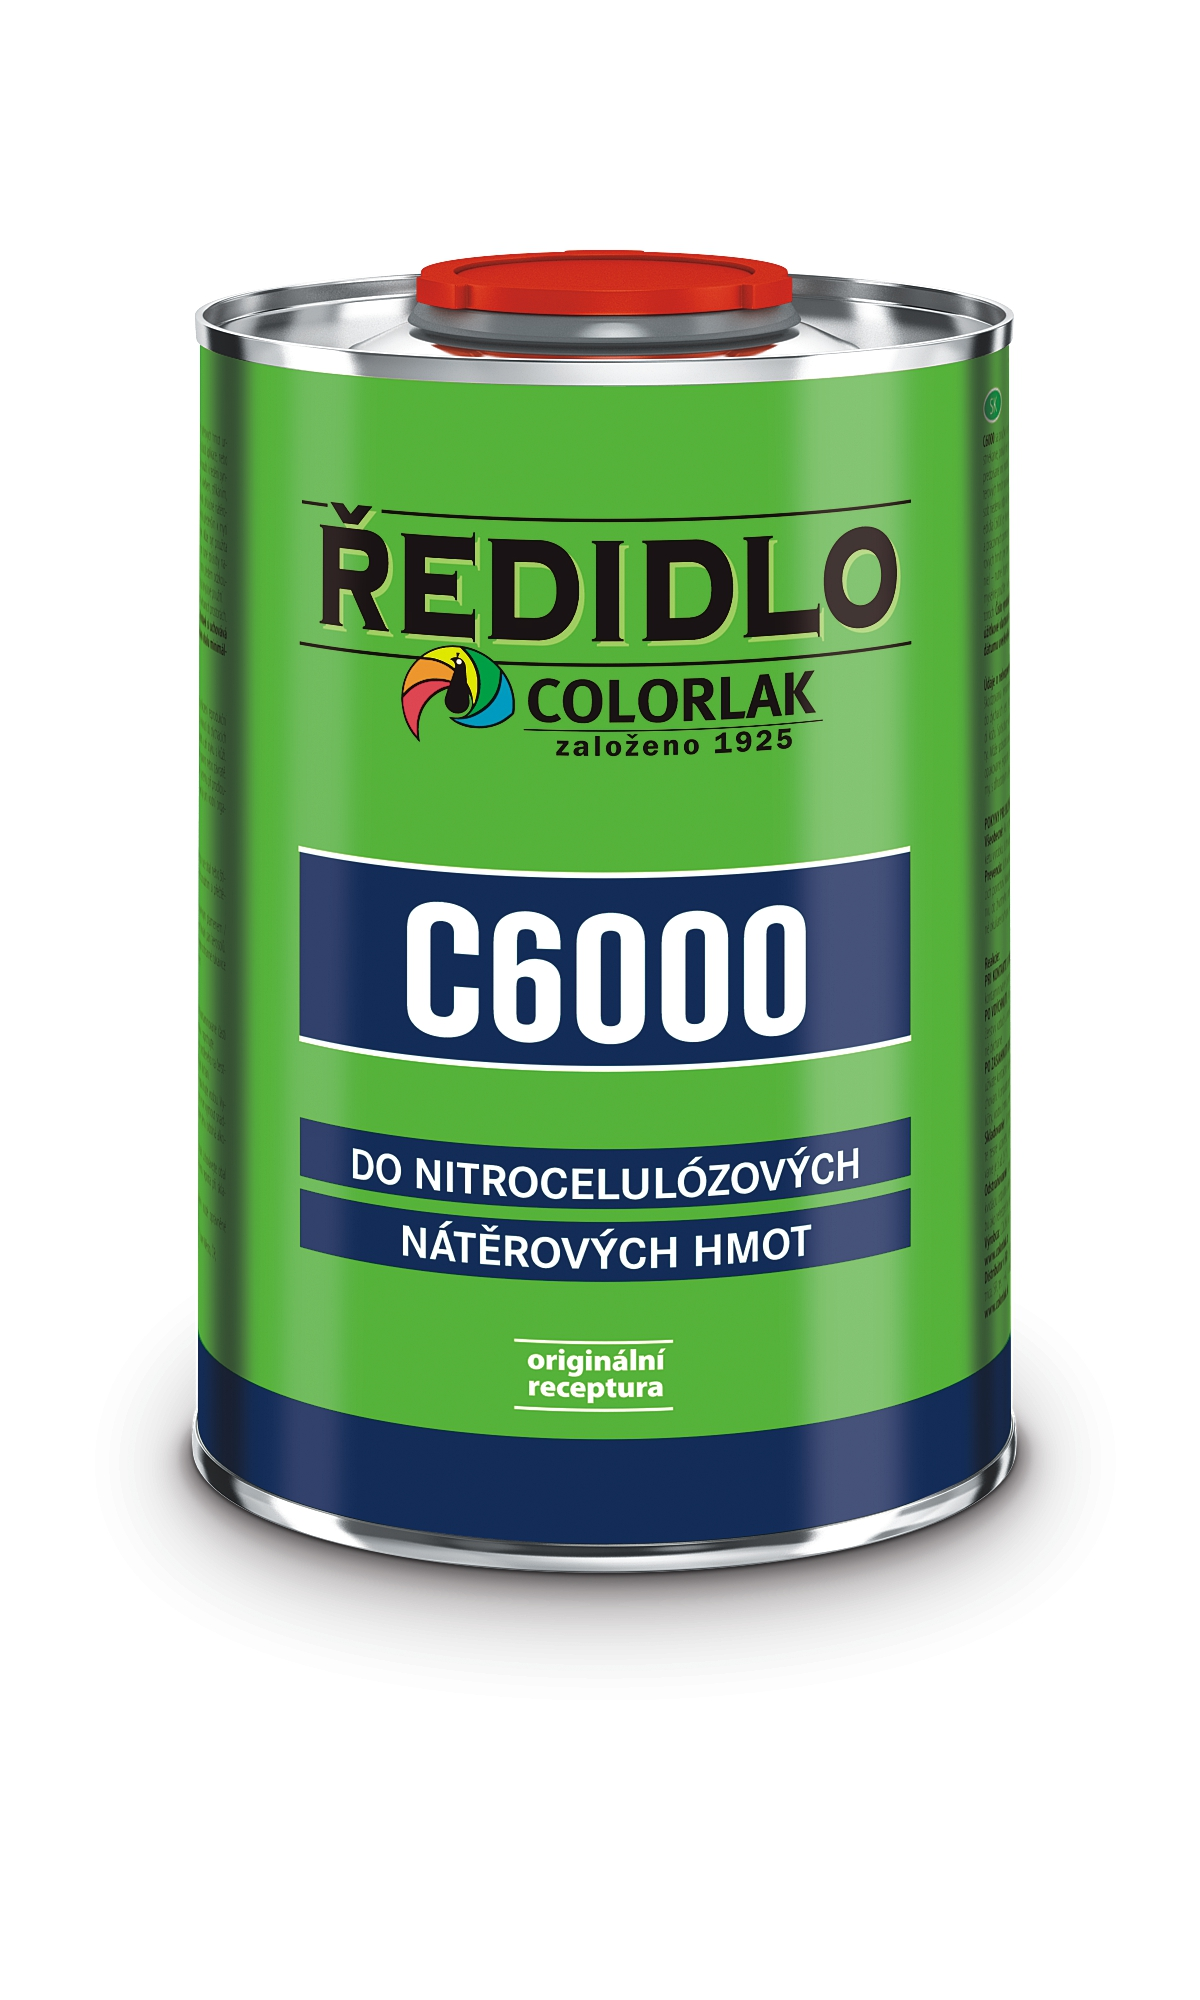 Colorlak Ředidlo C6000 0,42l